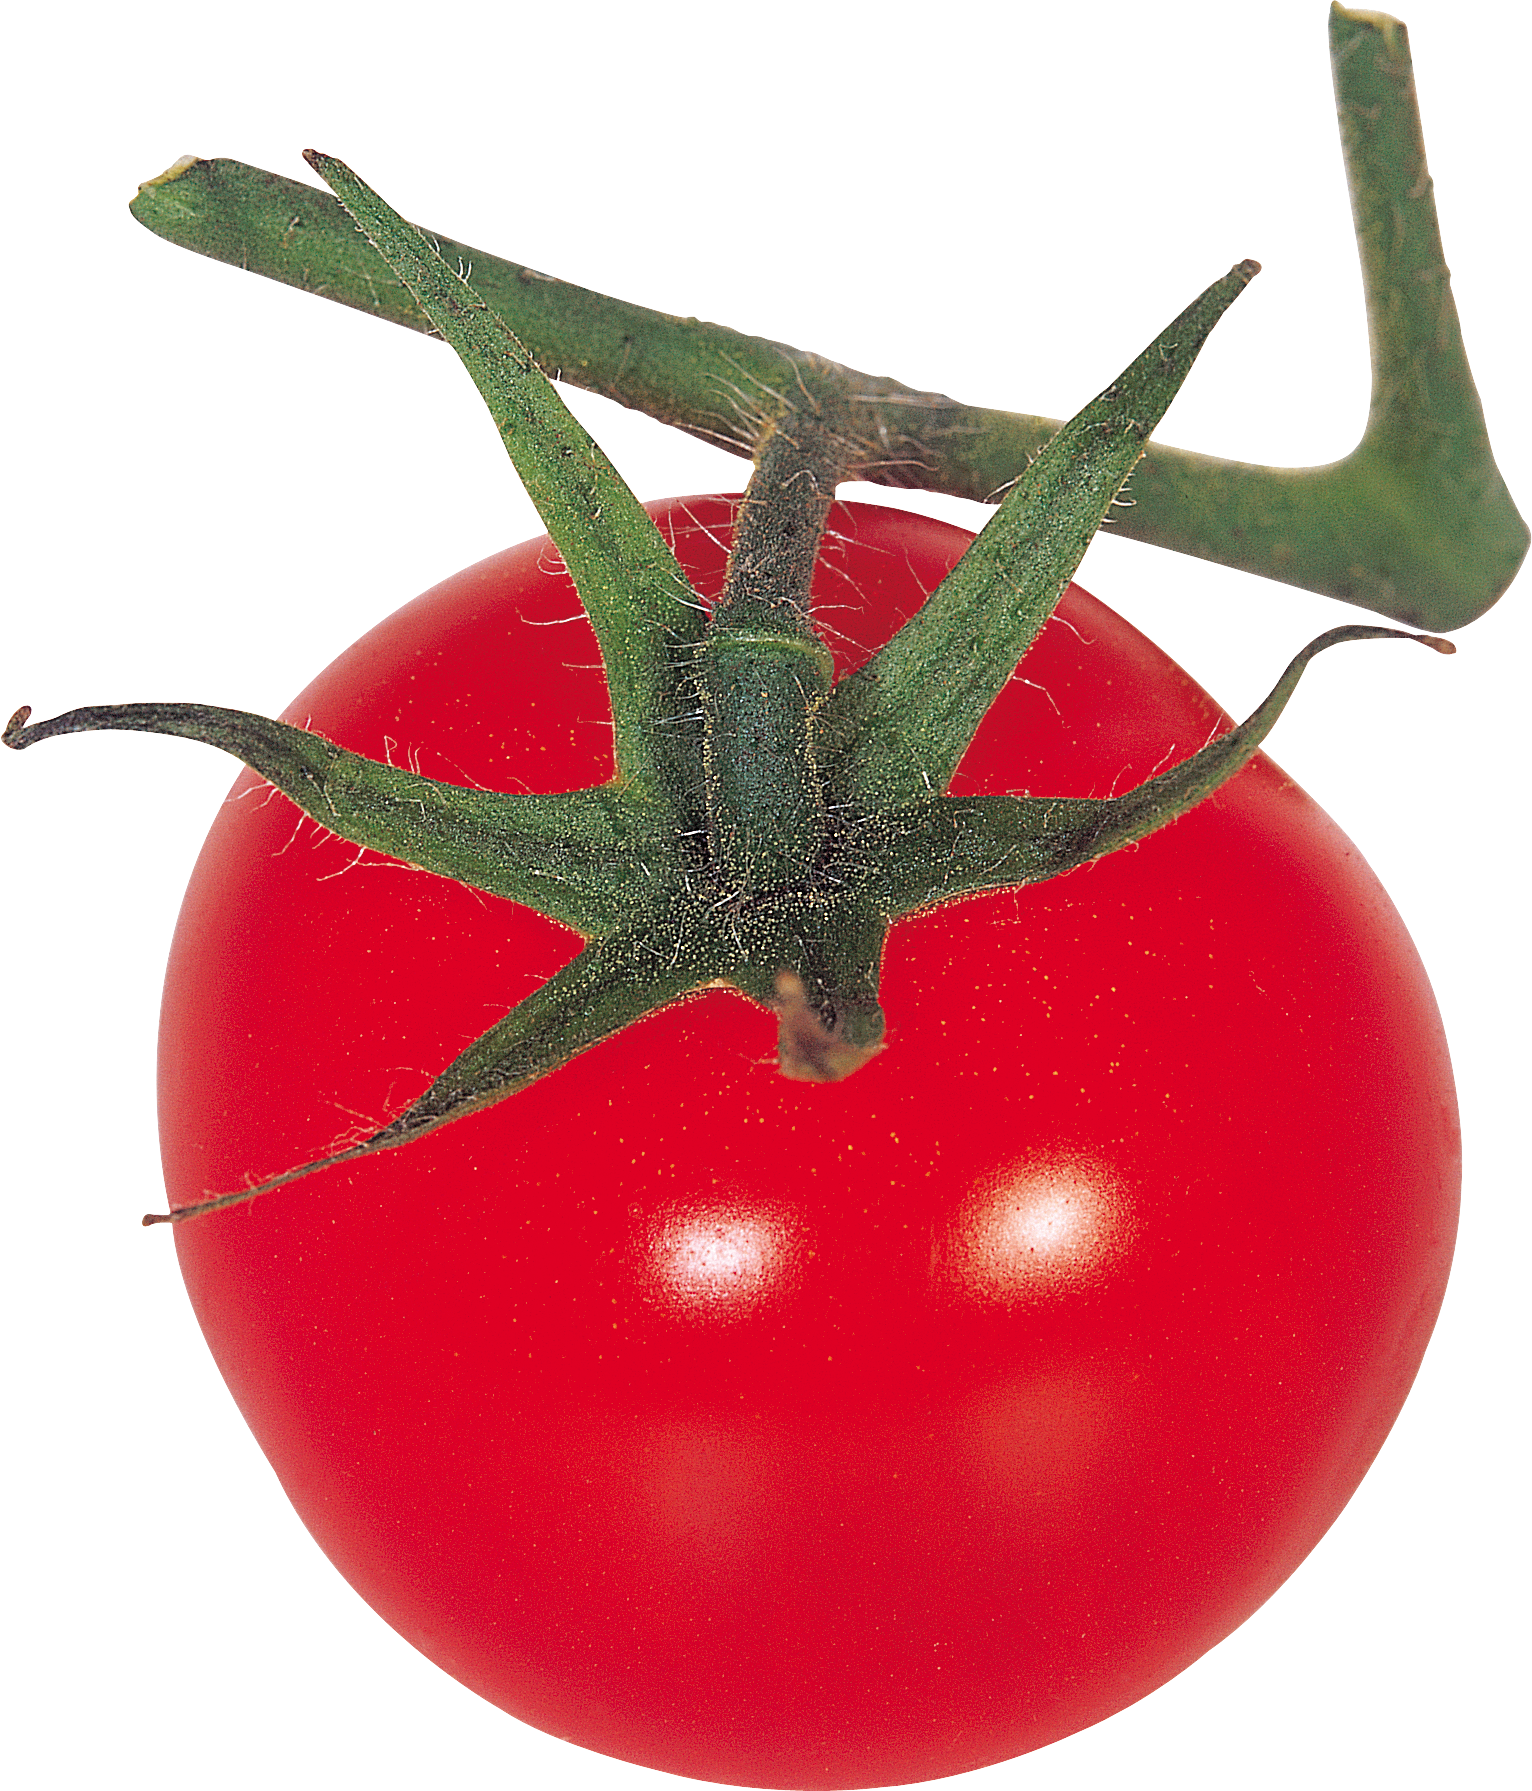 Tomate auf Zweig